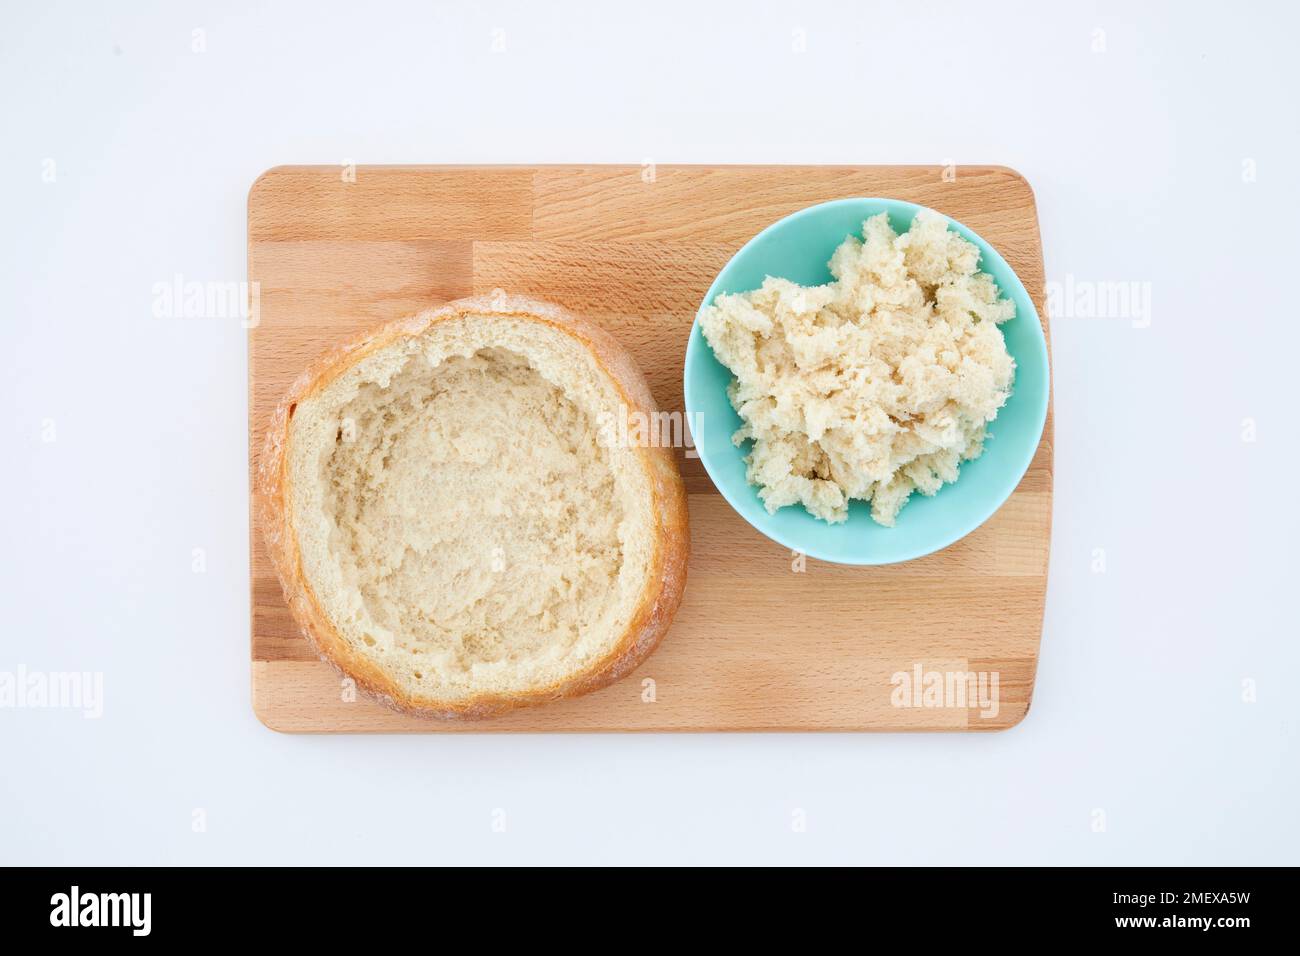 Muffuletta sandwhich - Passo 1 - Sminuzzare all'interno del pane e metterlo da parte Foto Stock